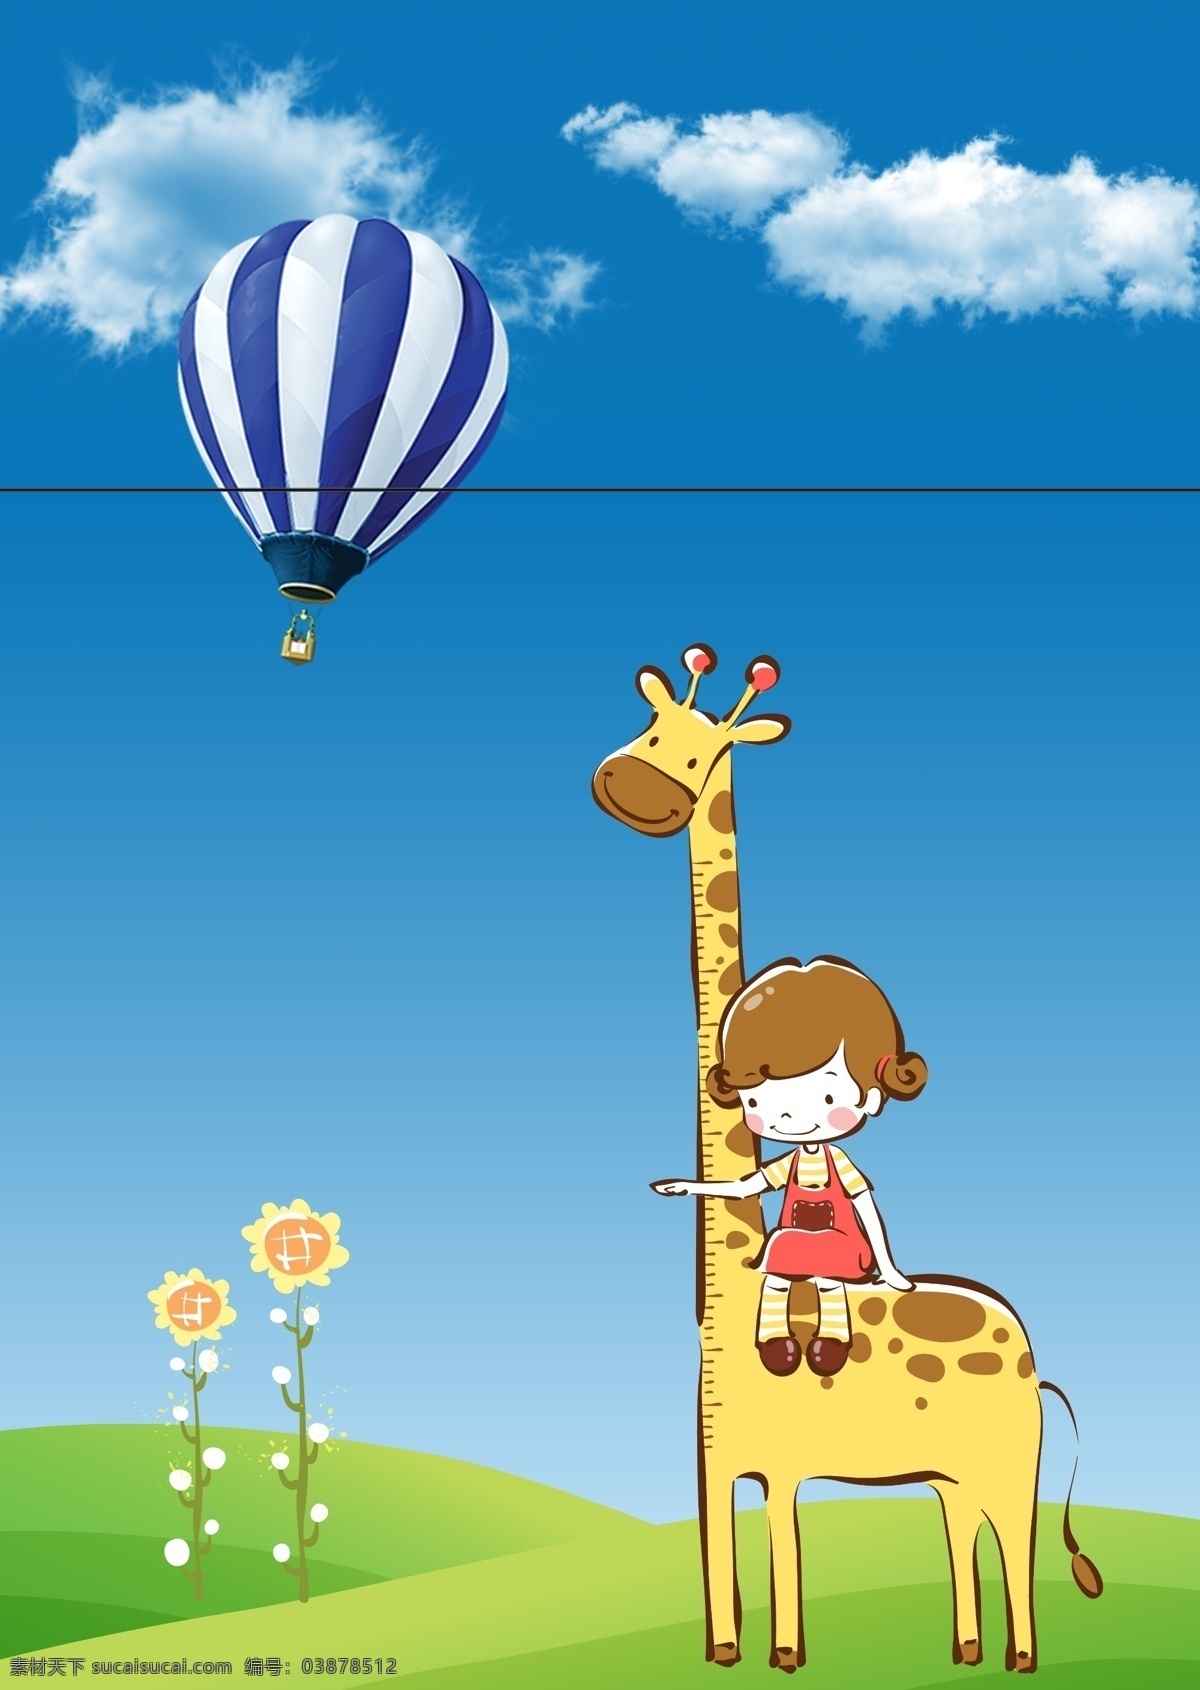 量 身高 孩子 长颈鹿 热气球 量身高 量身高的孩子 蓝天白云 大自然 文化艺术 绘画书法